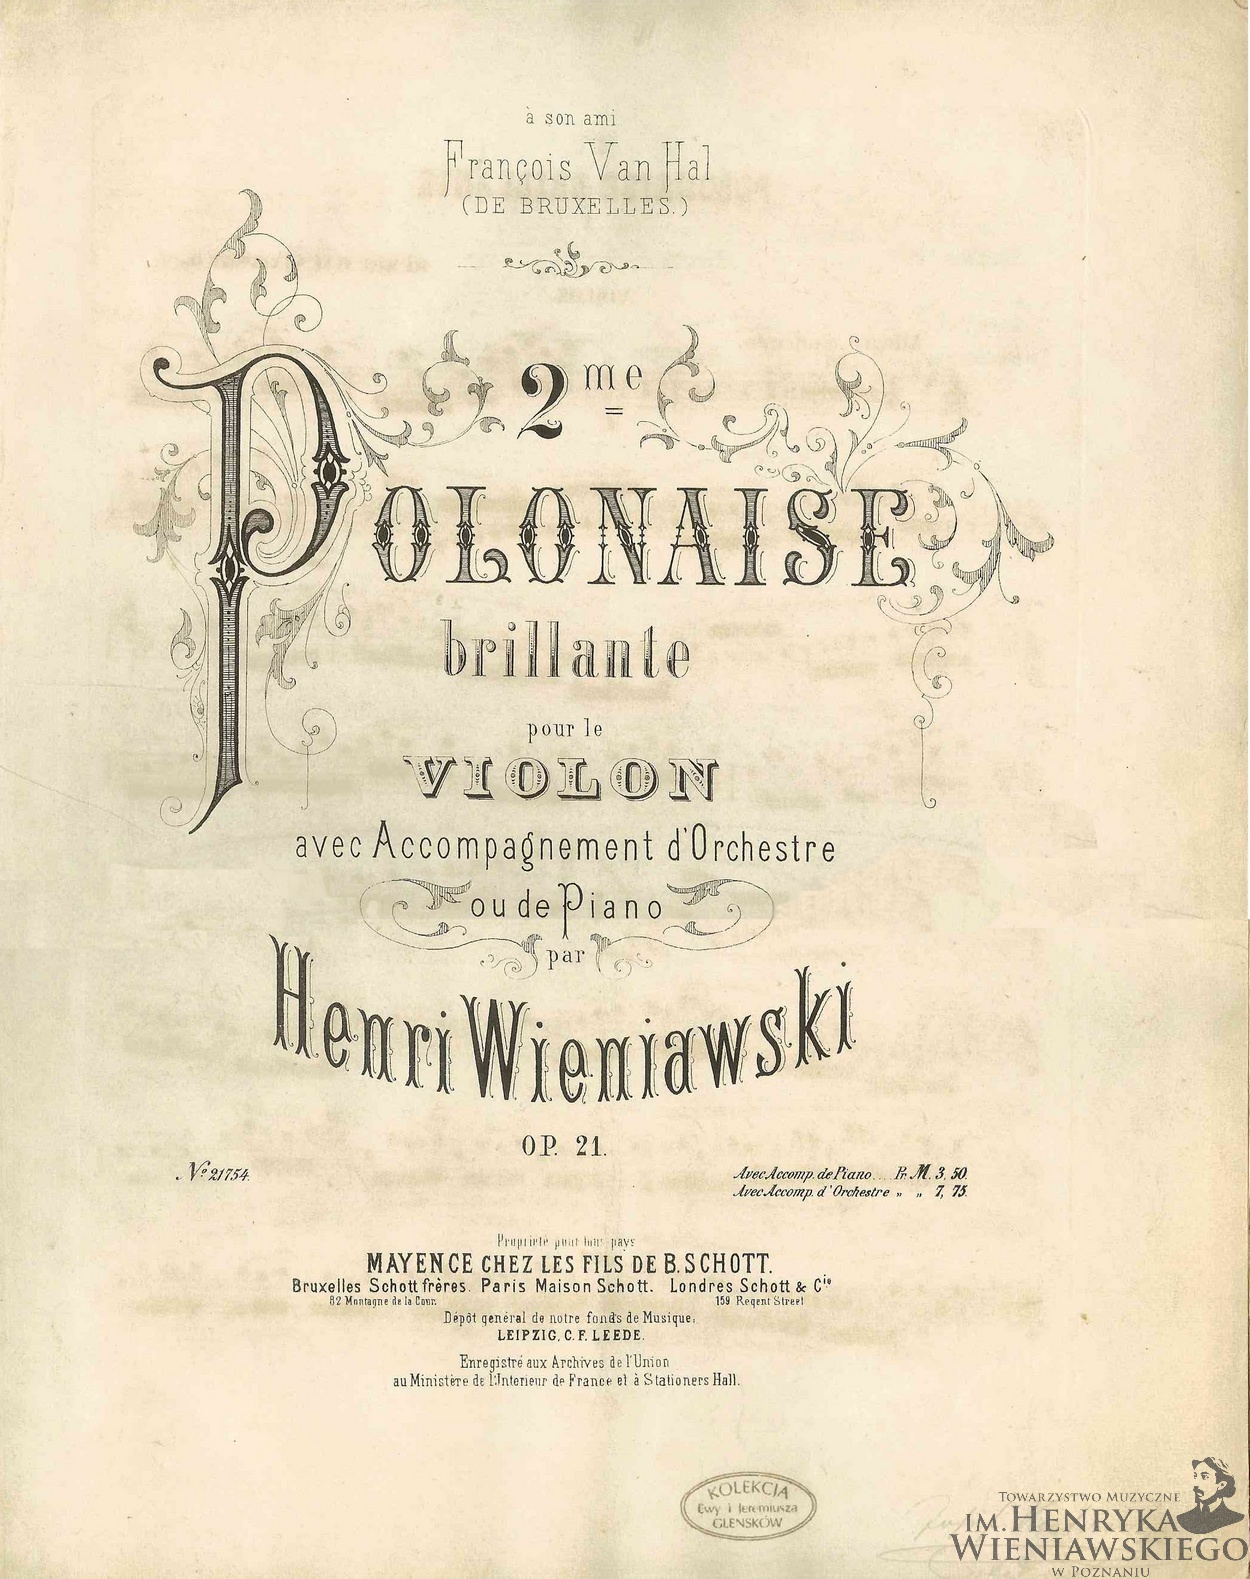 Page de couverture de la partition de l'opus 21 d'Henryk Wieniawski, Mainz, Schott, Pl. Nr 21754, 1875, http://www.wieniawski.com/op_21_eng.html, cliquer pour une vue agrandie